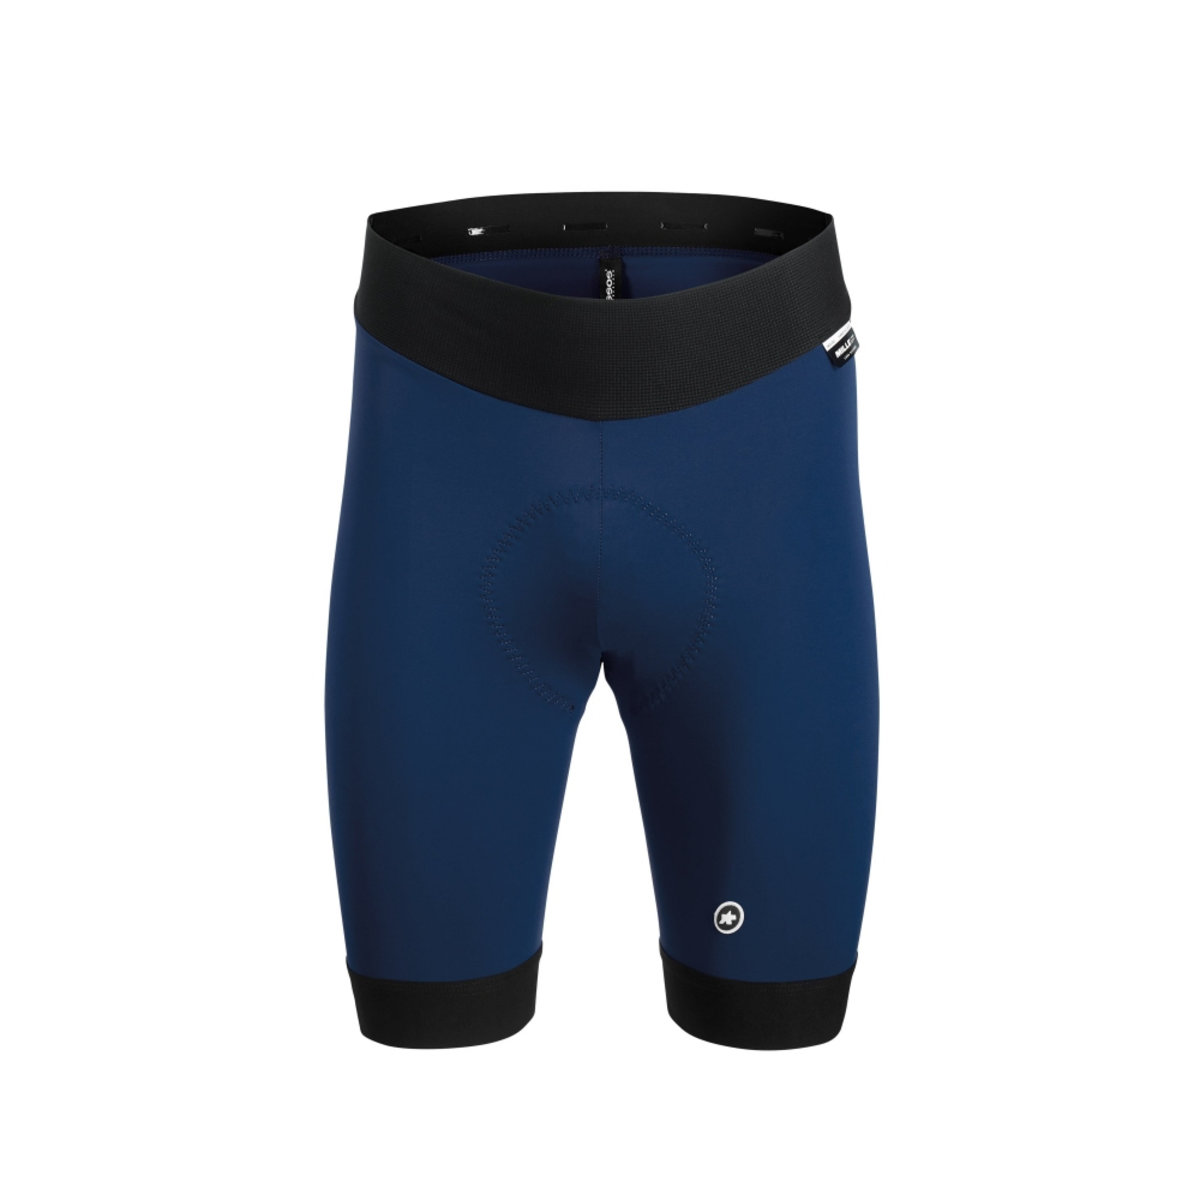 Велотрусы ASSOS Mille GT Half Shorts Caleum Blue, без лямок, мужские, синие с черным, XL фото 1